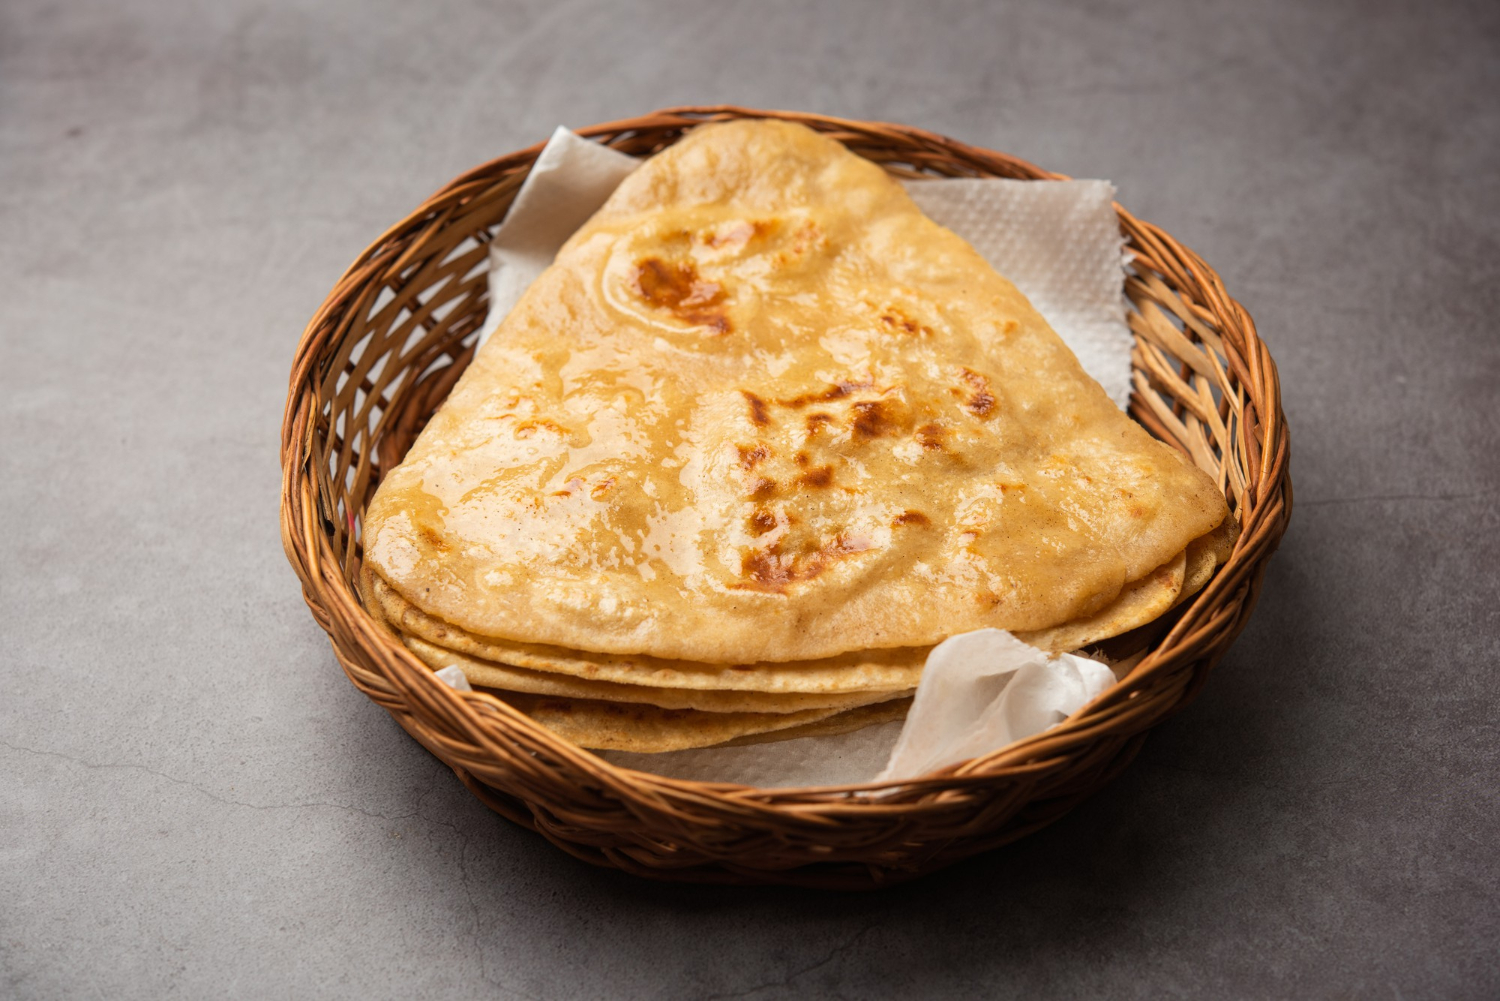 Plain Paratha or Chapati